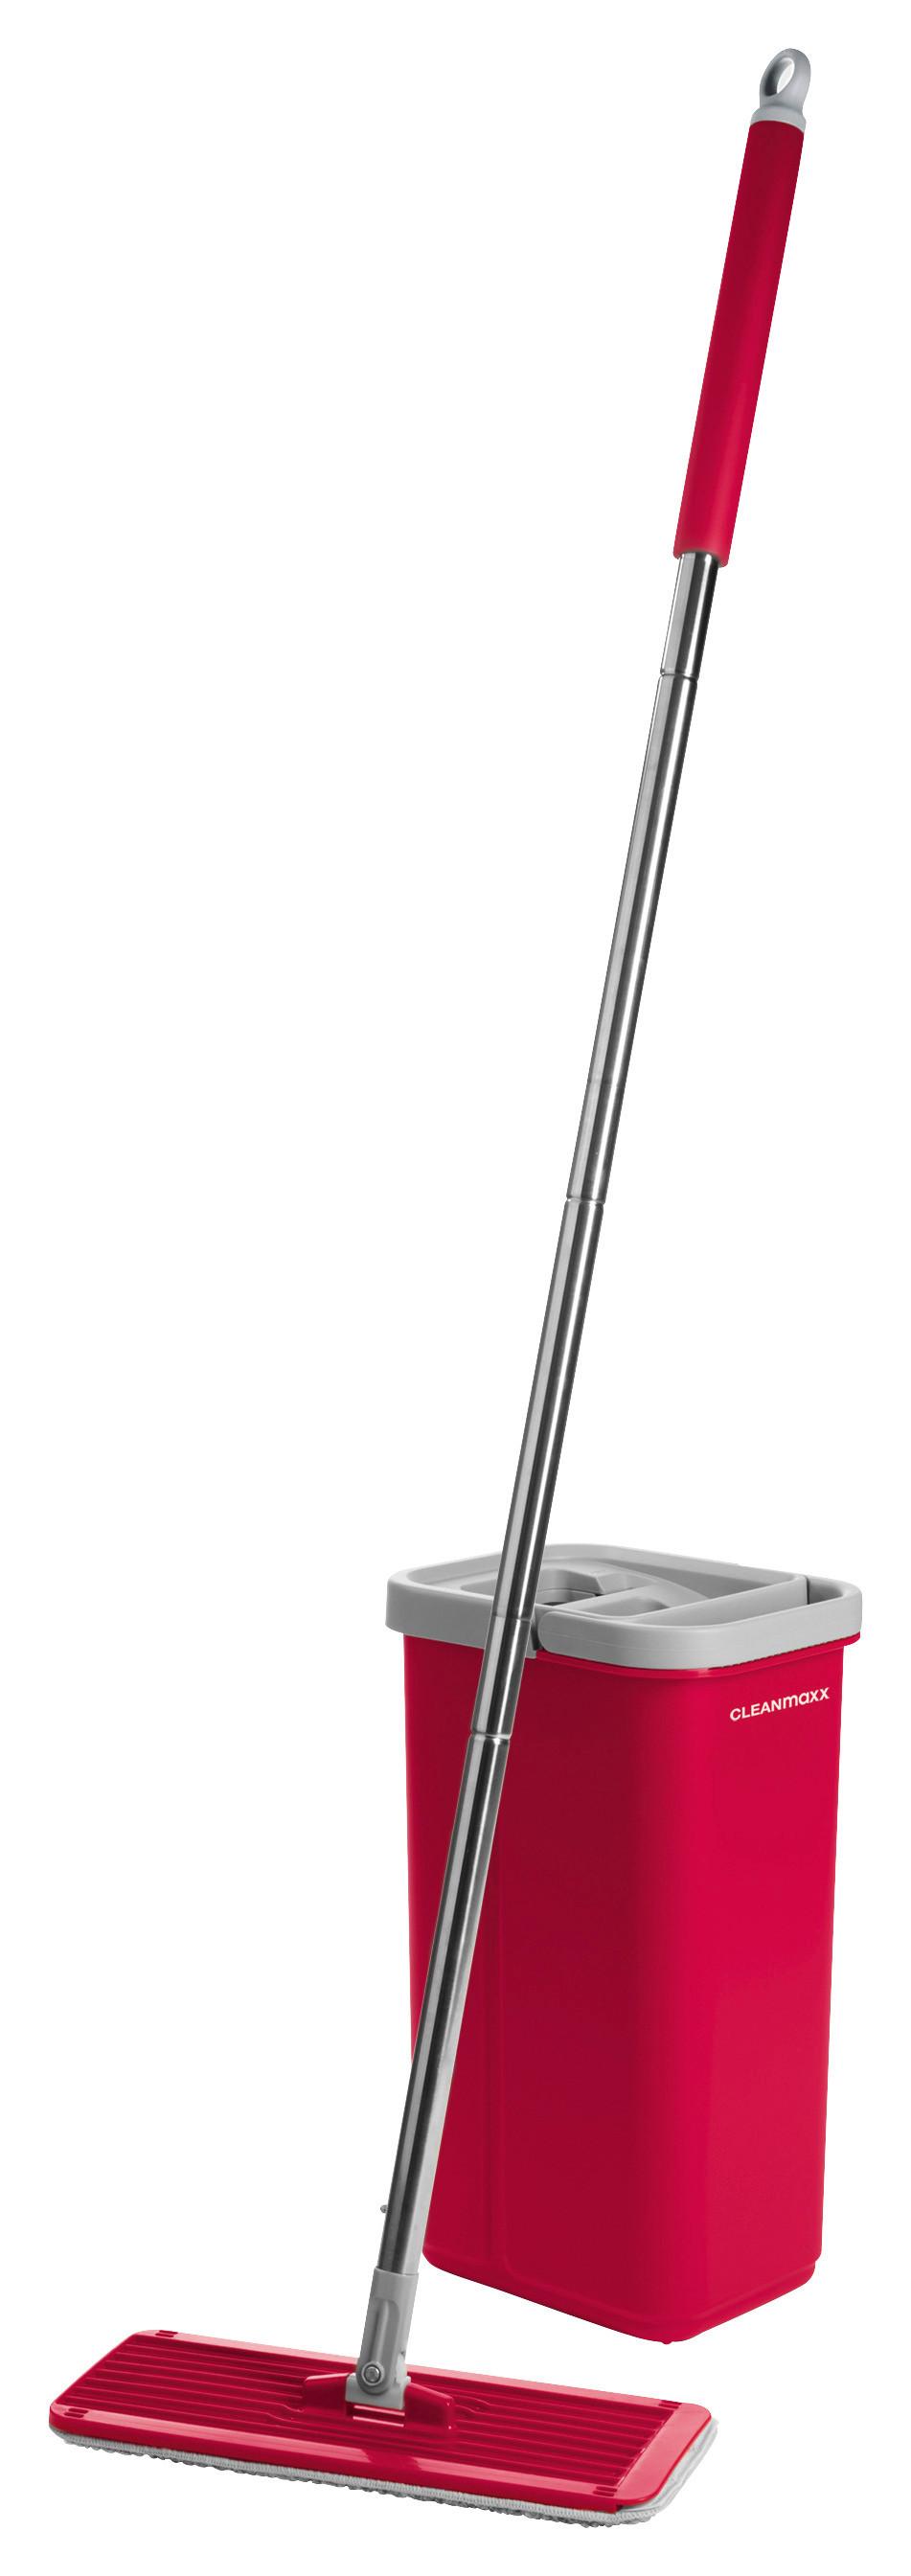 Bodenreinigungsset Cleanmaxx Komfort-Mopp - Rot, Basics, Kunststoff (19,9/15,0/125,5cm) - TV - Unser Original